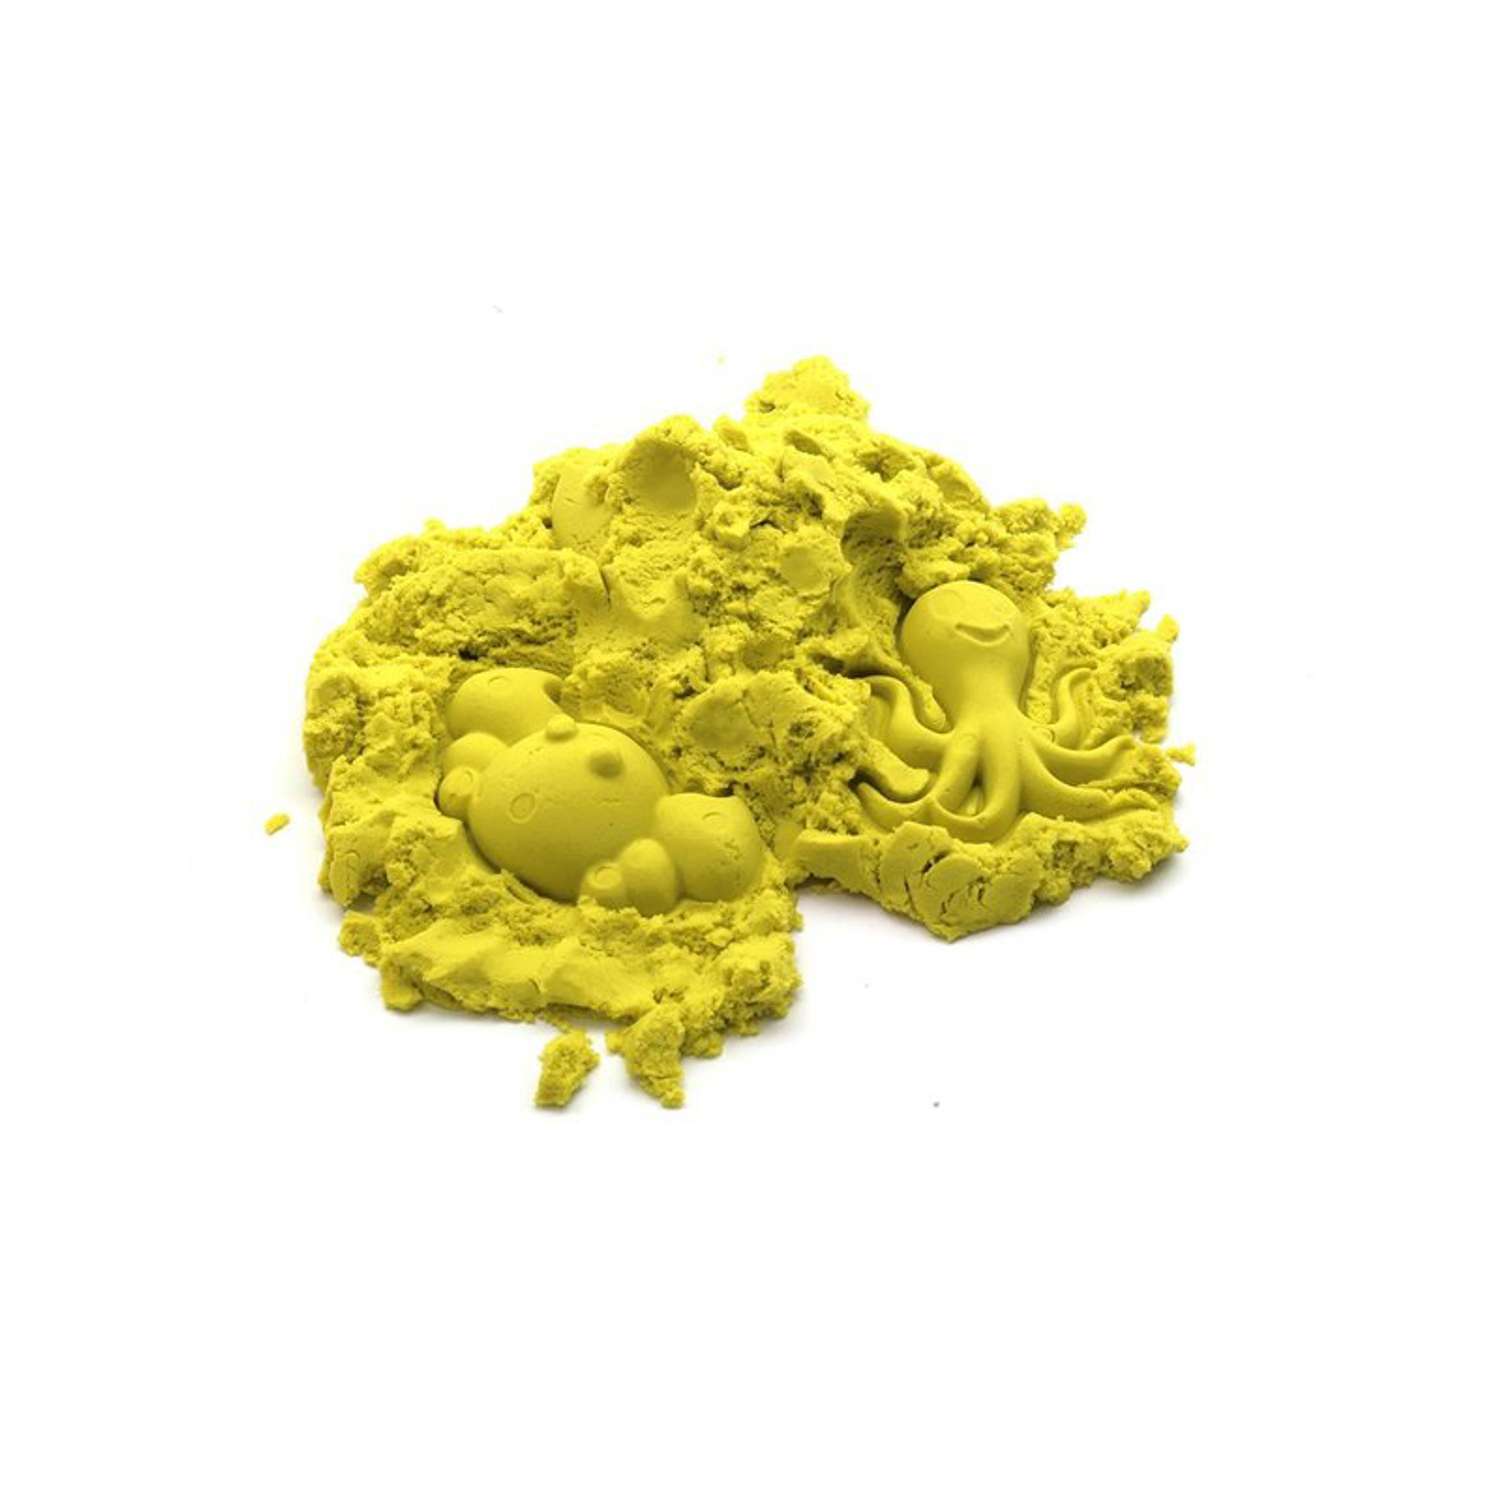 Песочница Космический песок с формочками Желтый 2 кг - фото 2